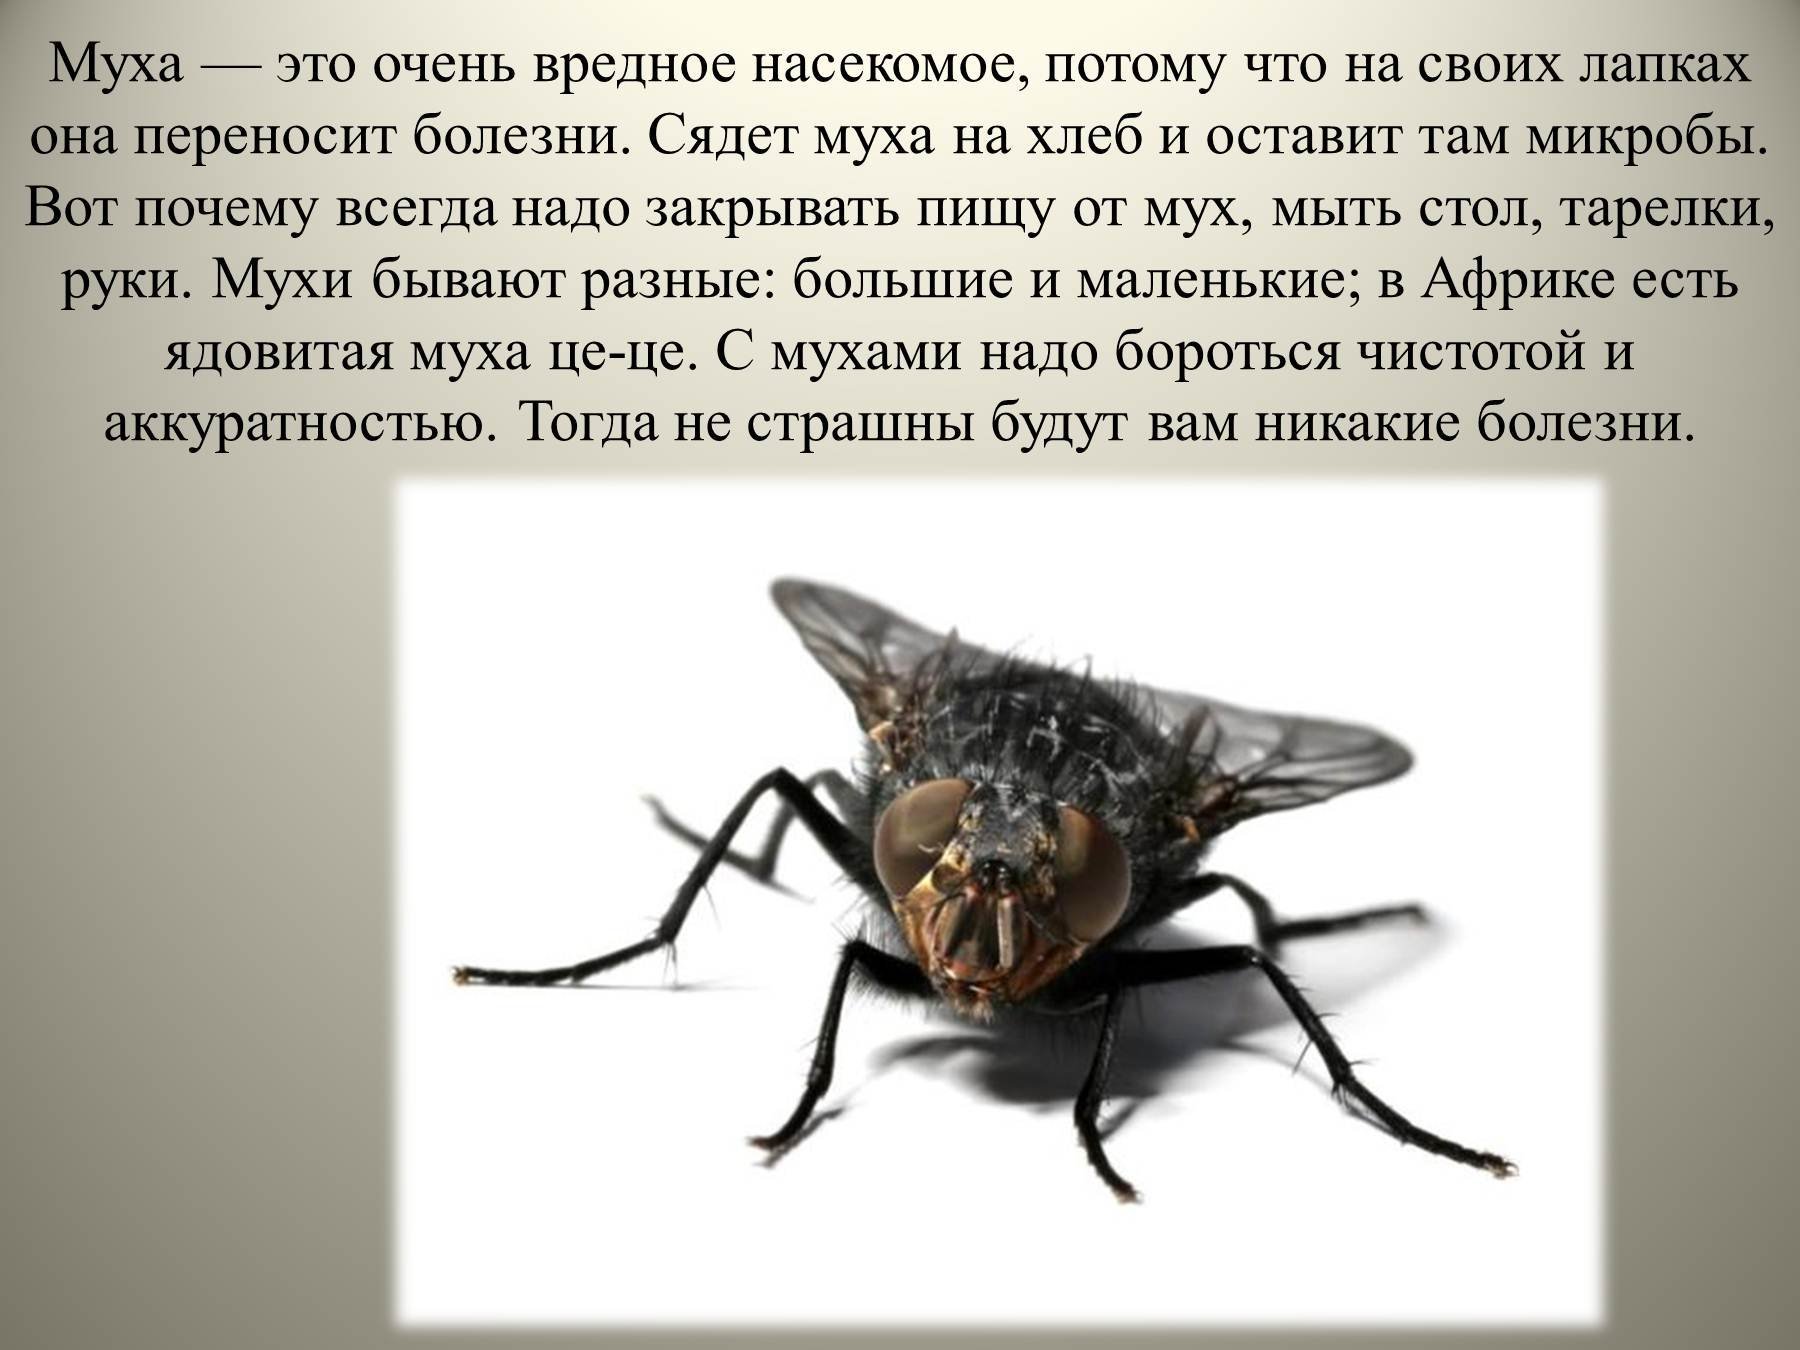 Характер мухи. Доклад про мух. Вредные насекомые. Сообщение про муху. Интересные факты о мухах.